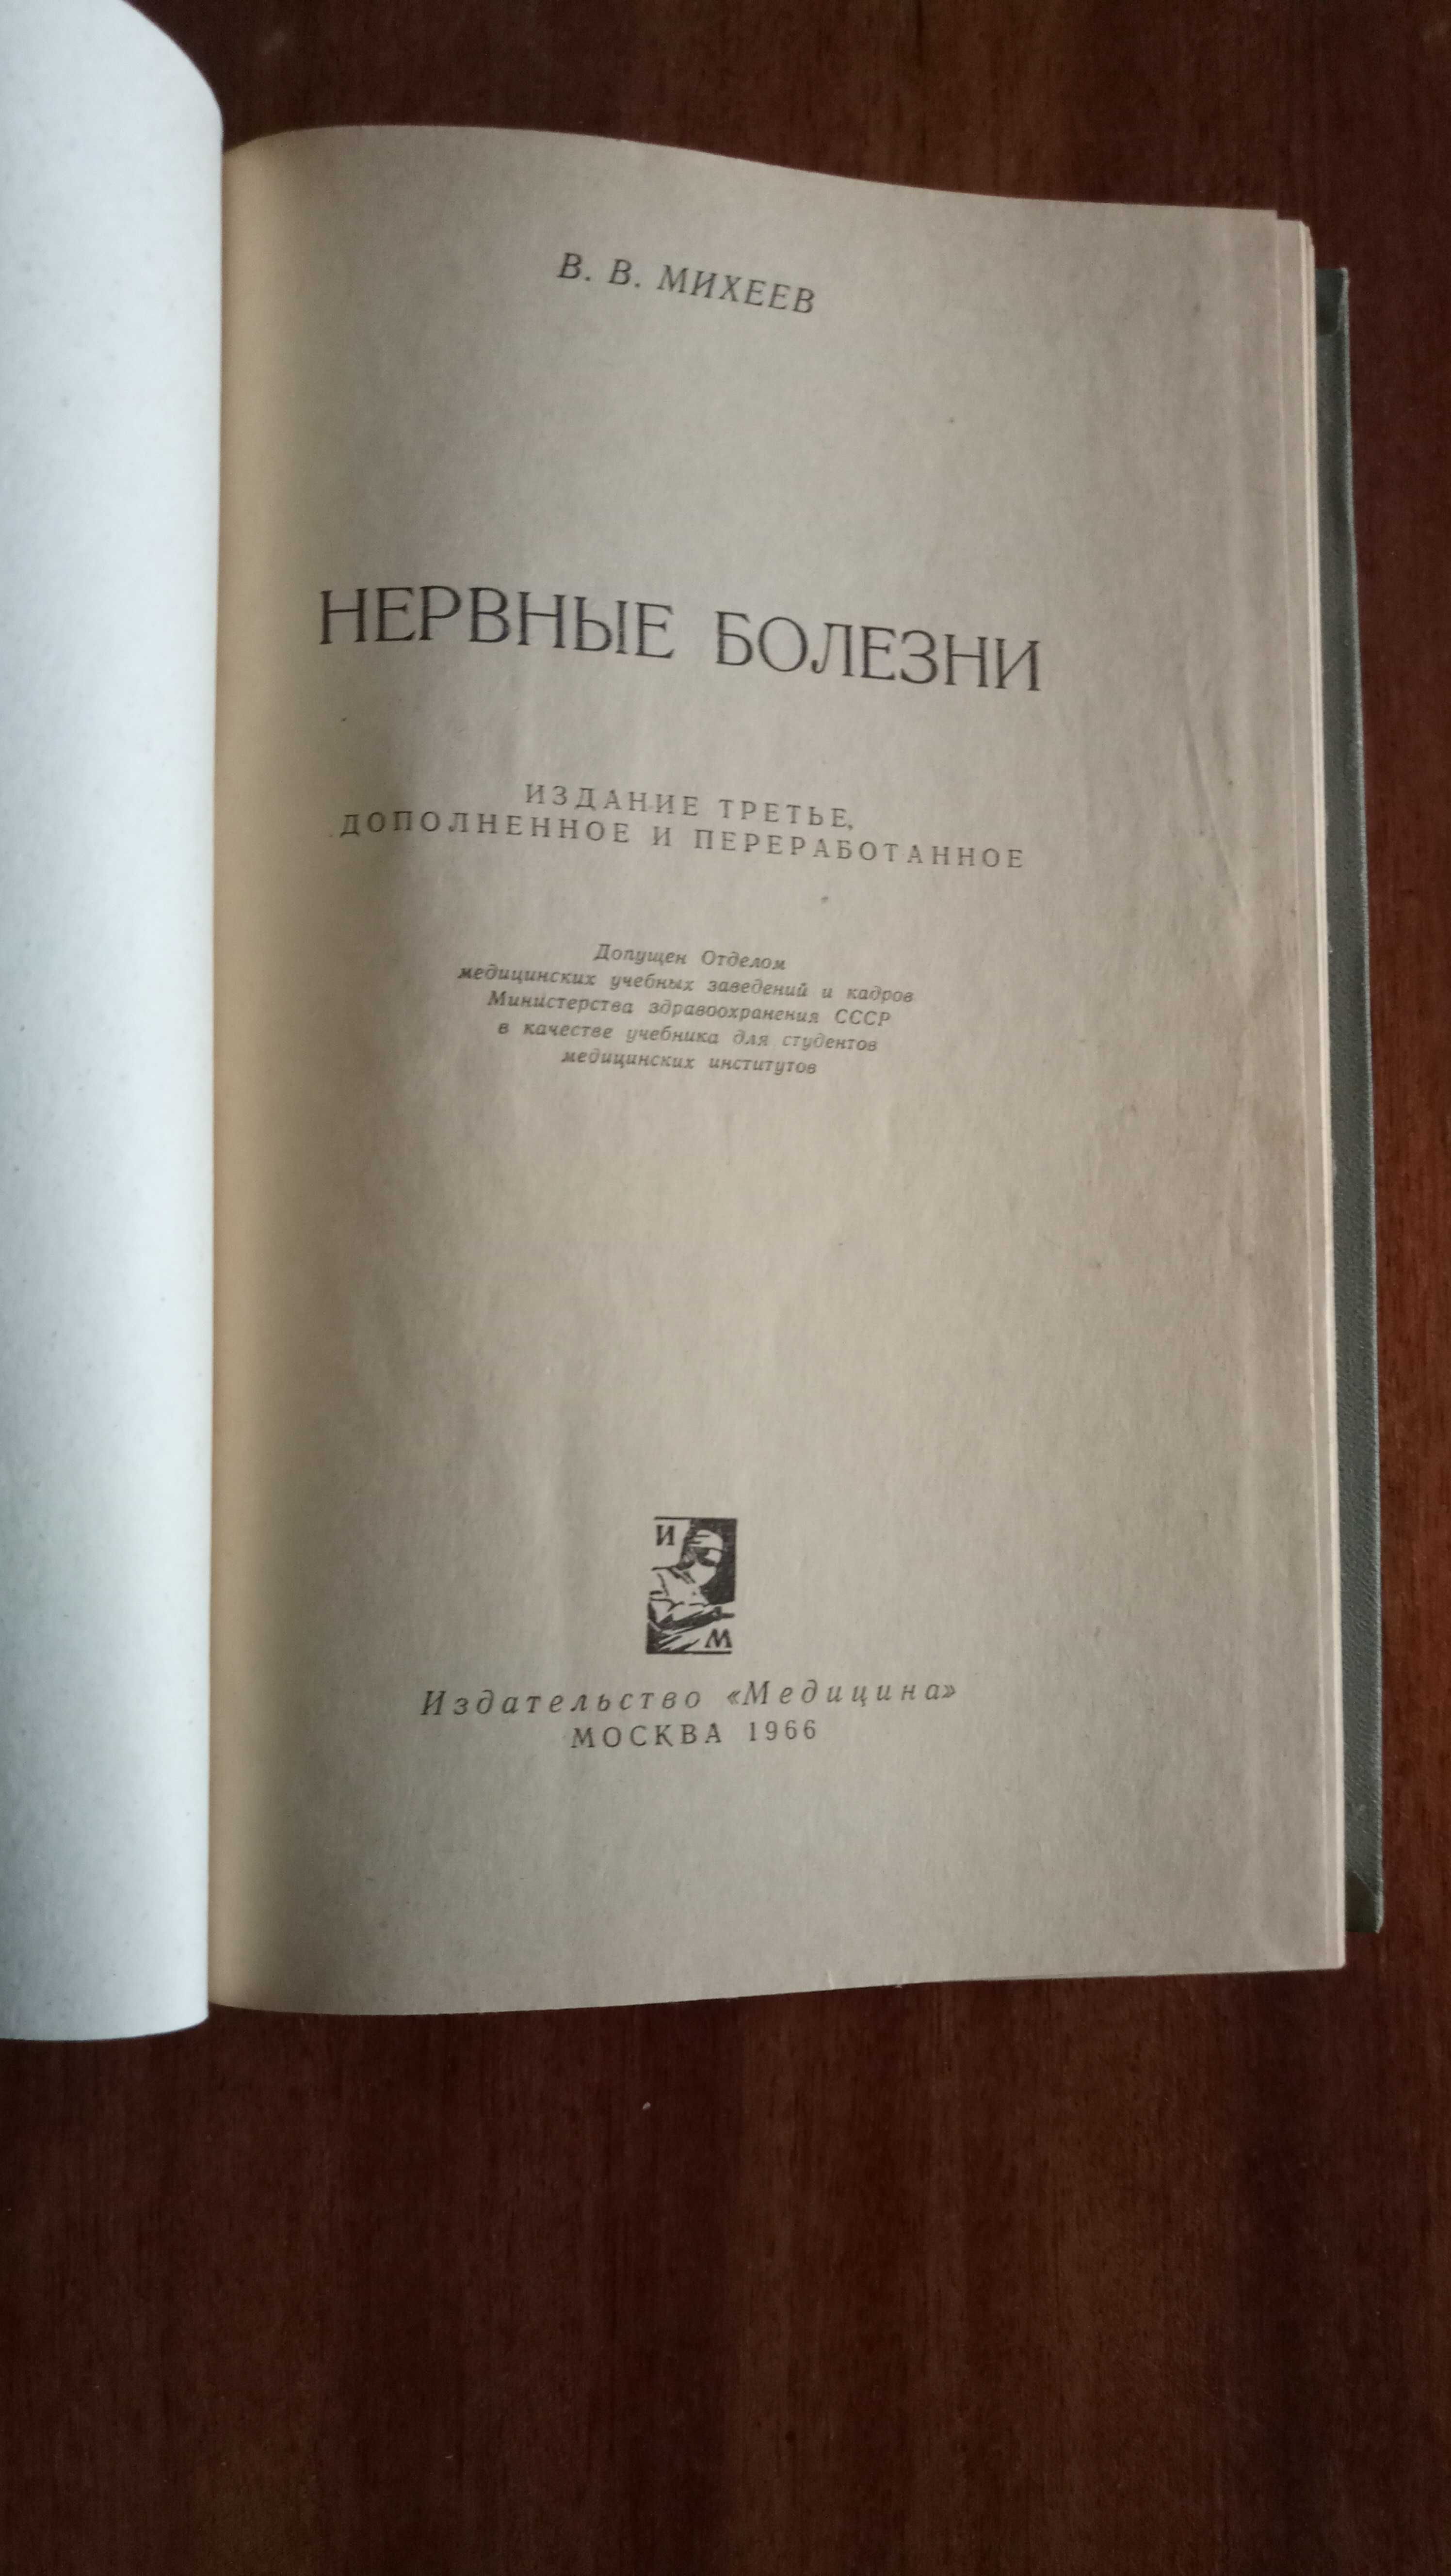 Учебник нервных болезней, В. В.  Михеев, 1966 г.